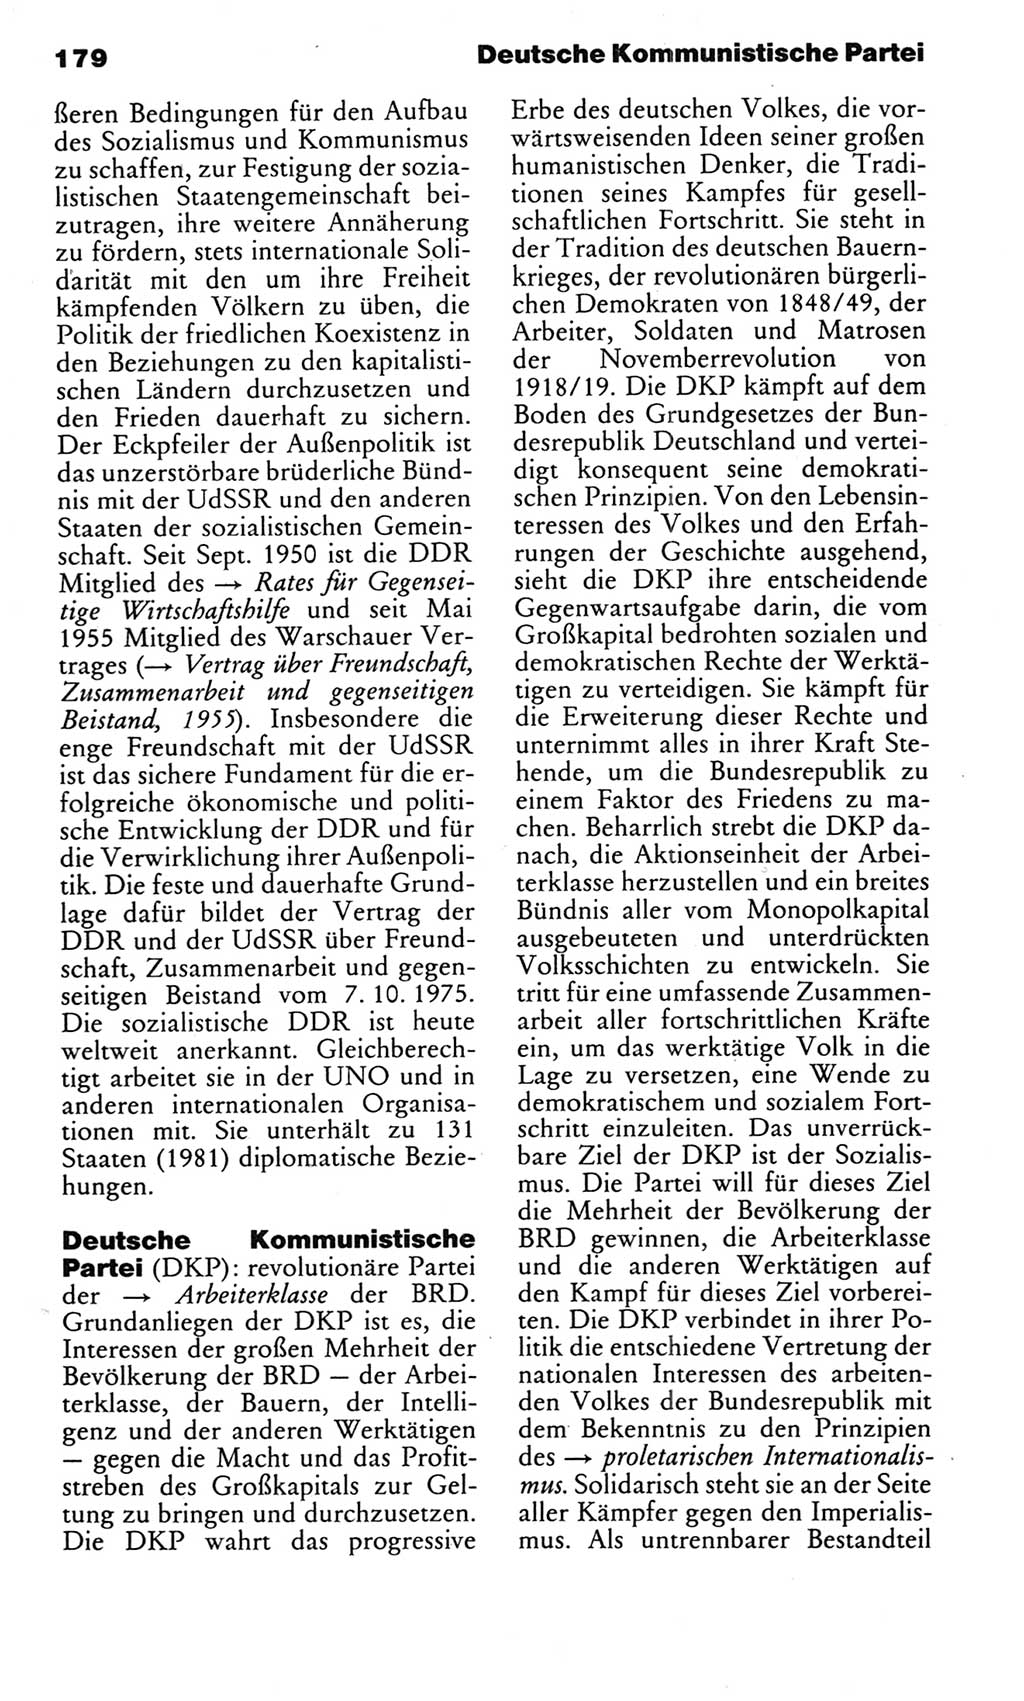 Kleines politisches Wörterbuch [Deutsche Demokratische Republik (DDR)] 1985, Seite 179 (Kl. pol. Wb. DDR 1985, S. 179)